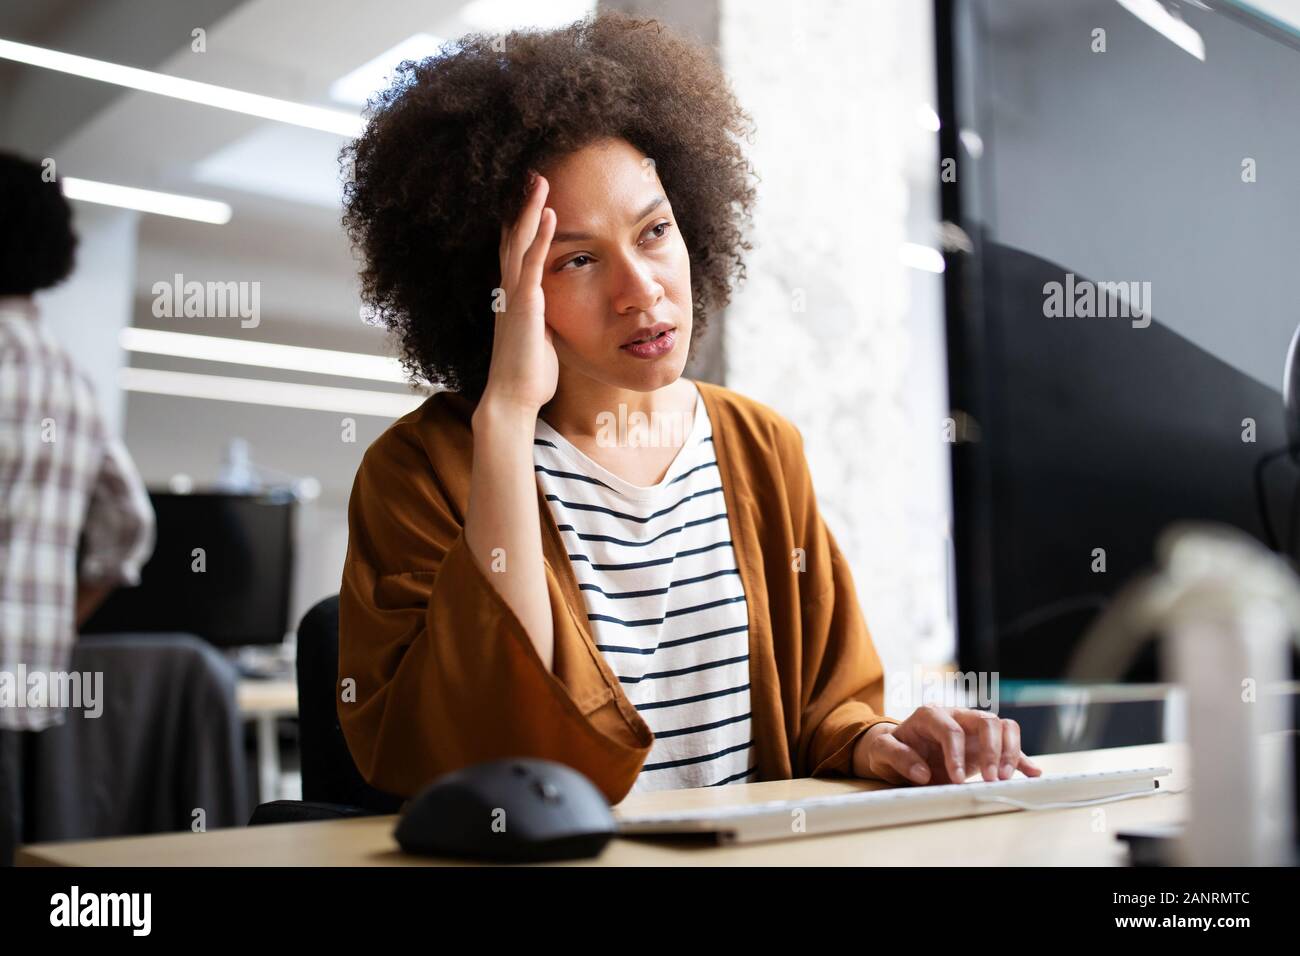 Überarbeitet und frustrierte junge Frau vor der Computer im Büro Stockfoto